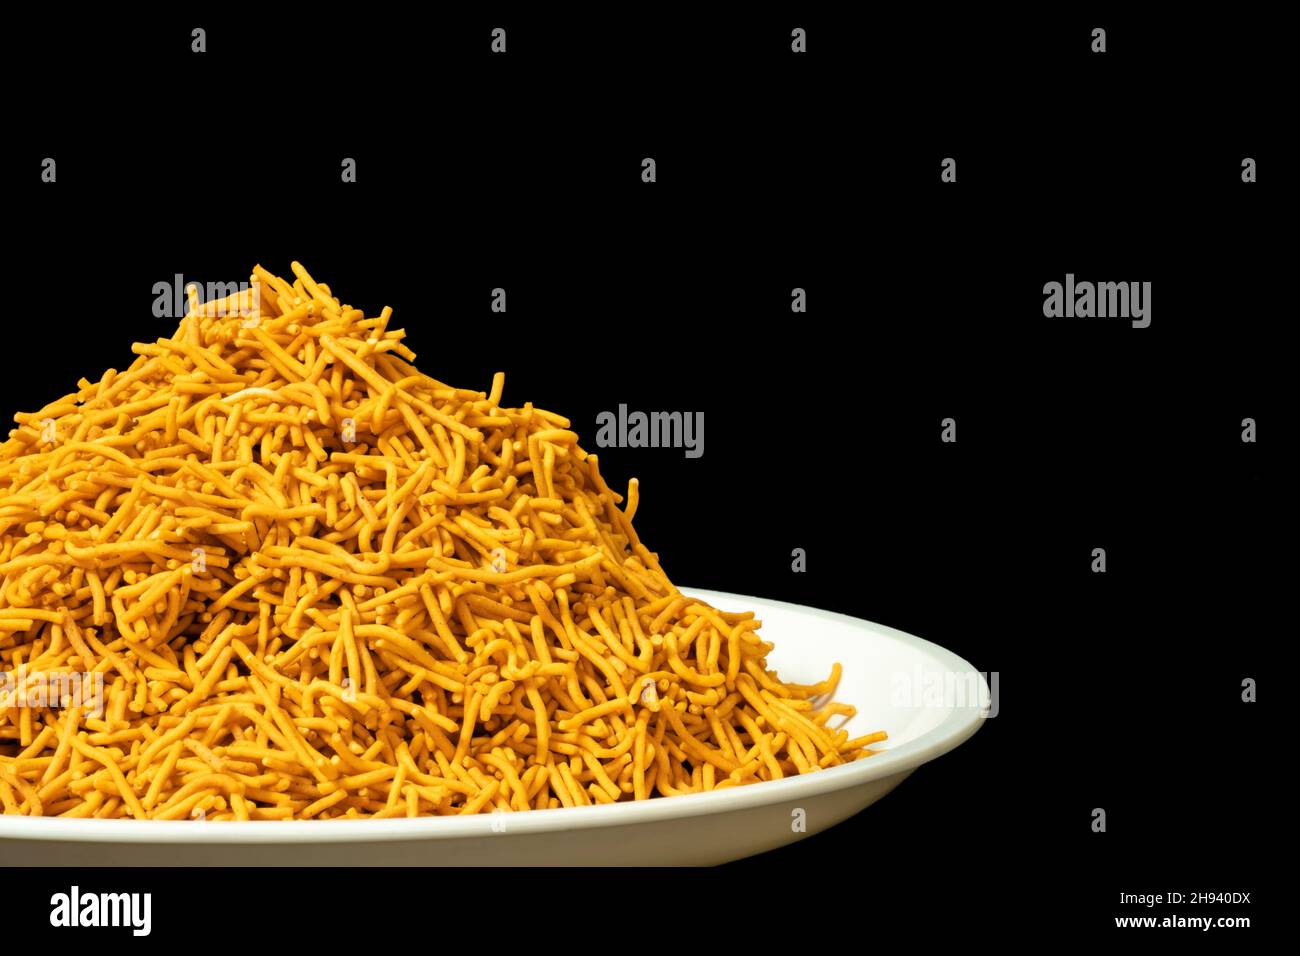 Tas de Spicy Sev Namkeen Food dans un plat blanc sur le côté droit, farine de pois chiches et épices, isolé dans un fond noir Banque D'Images